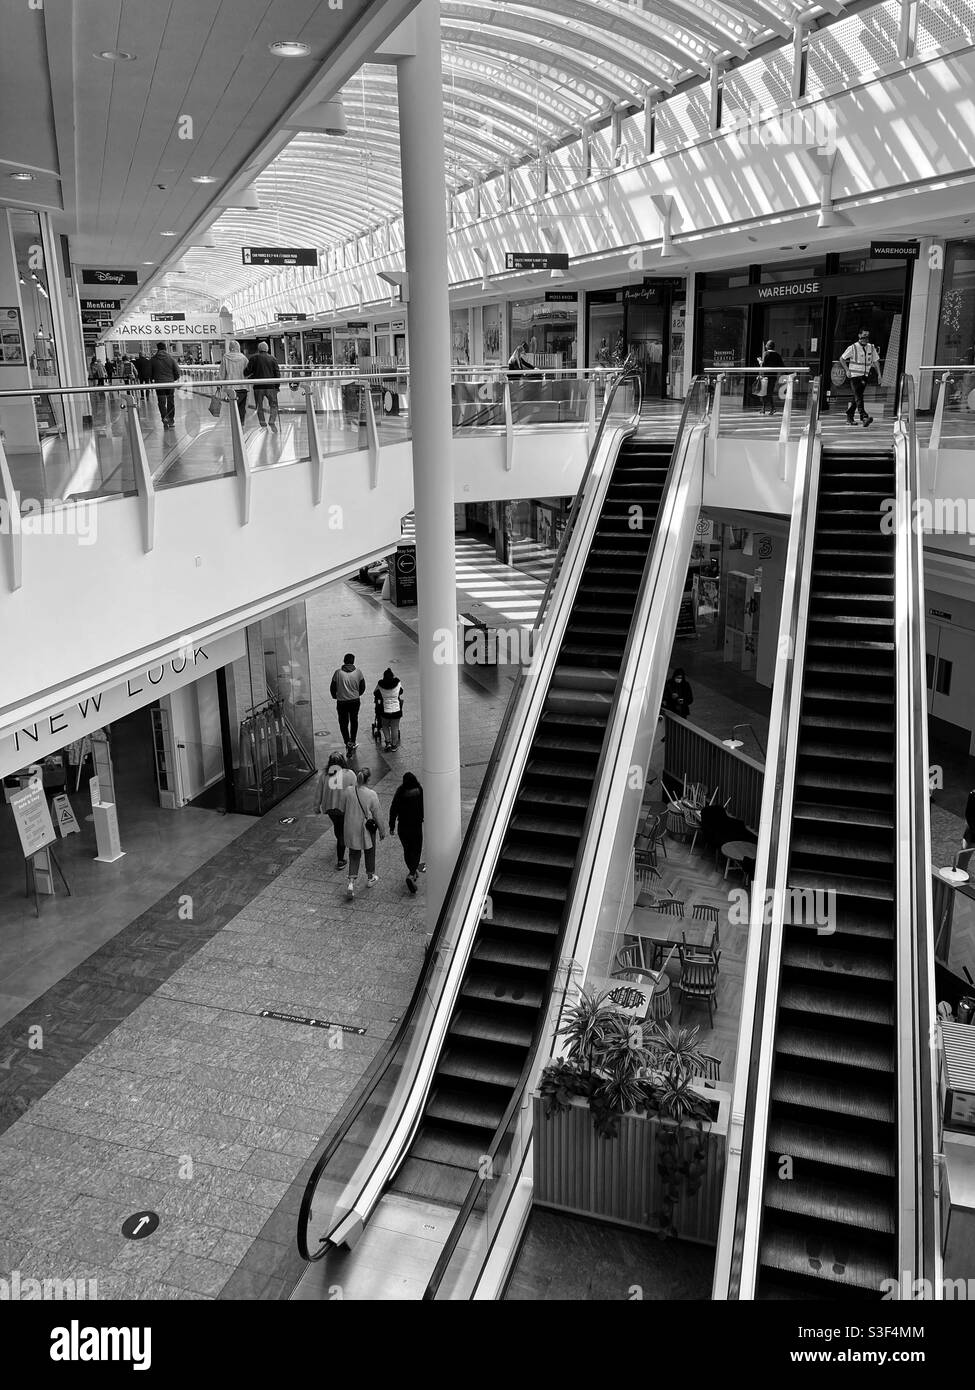 The Mall, Cribbs Causeway, Bristol, Angleterre, Royaume-Uni - centre commercial - montrant les escaliers mécaniques à l'étage supérieur Banque D'Images